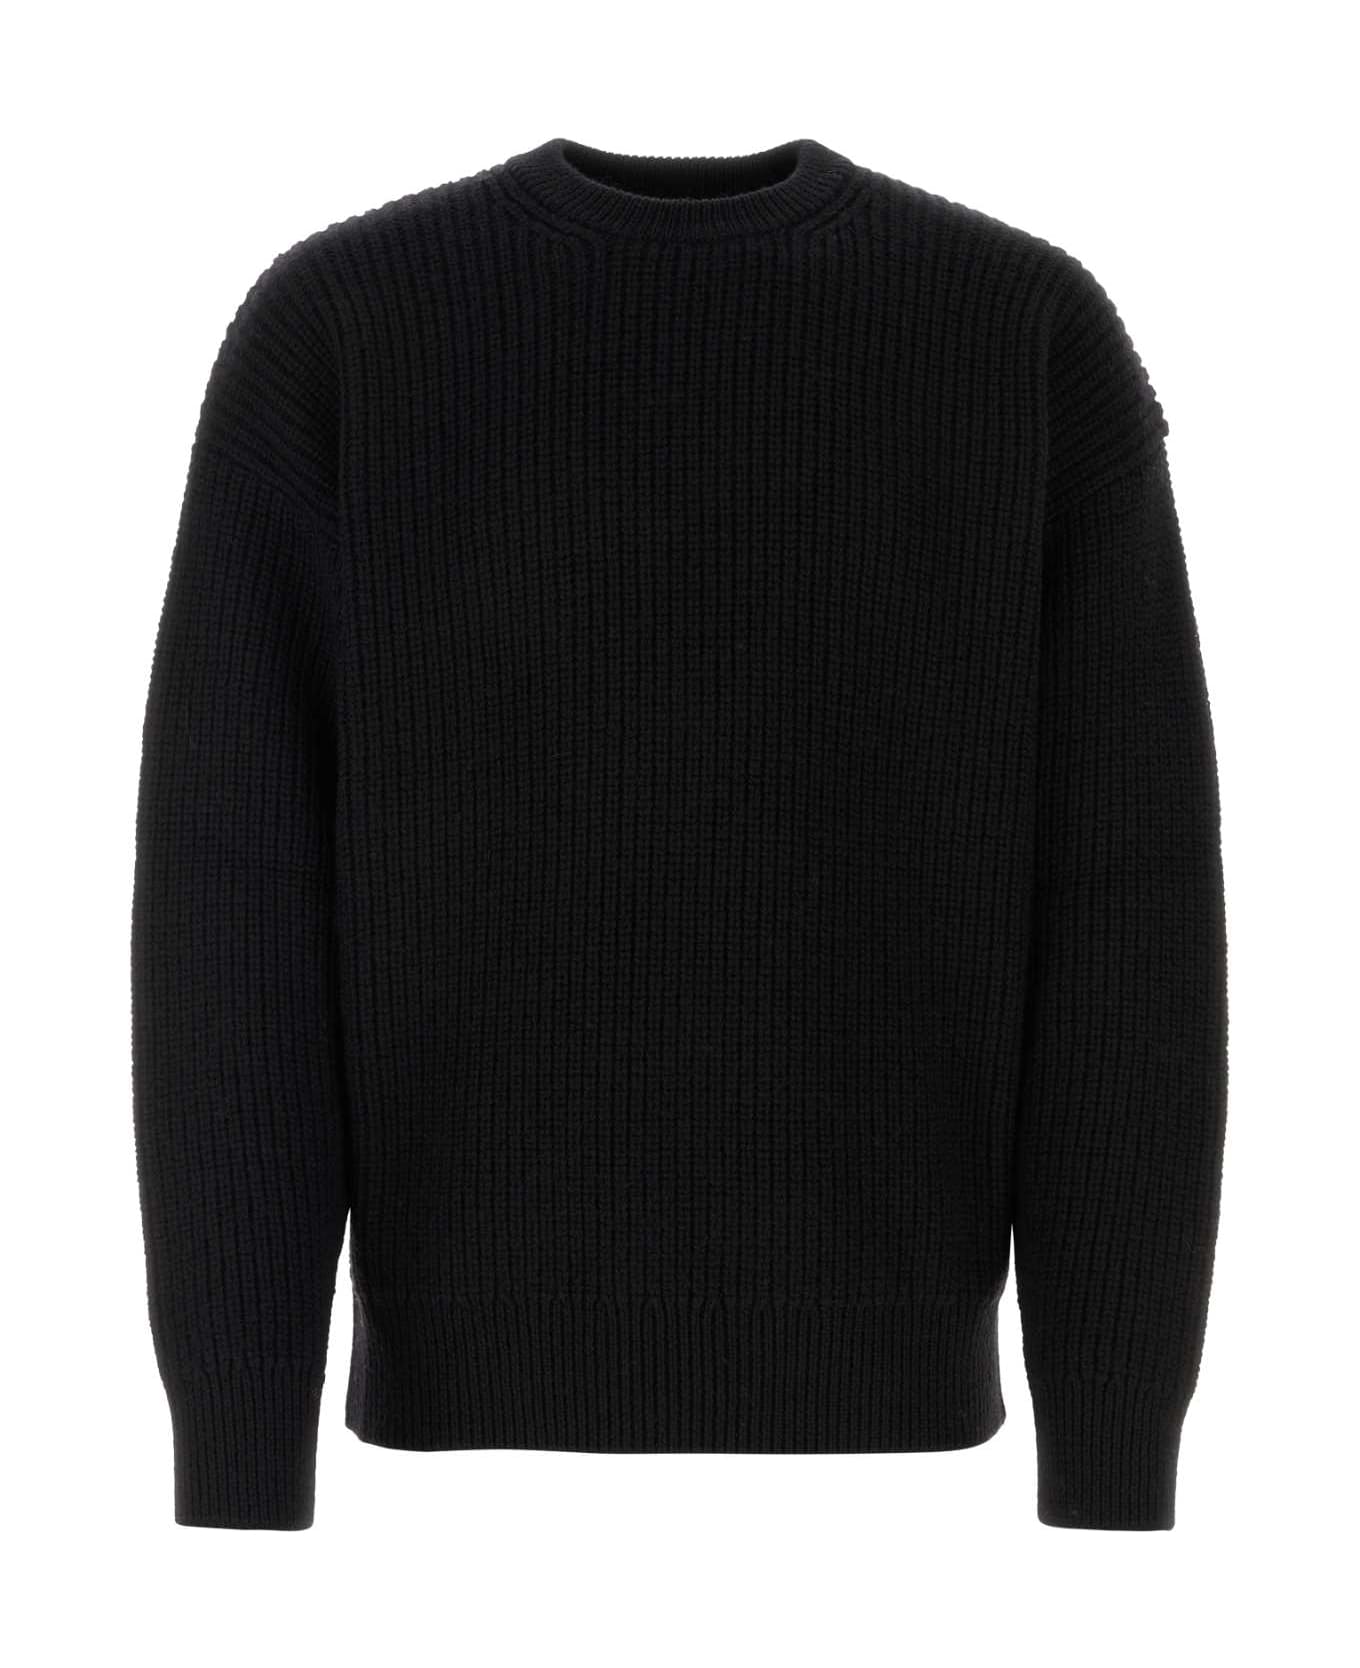 Marine Serre Black Wool Blend Sweater - BK99 ニットウェア